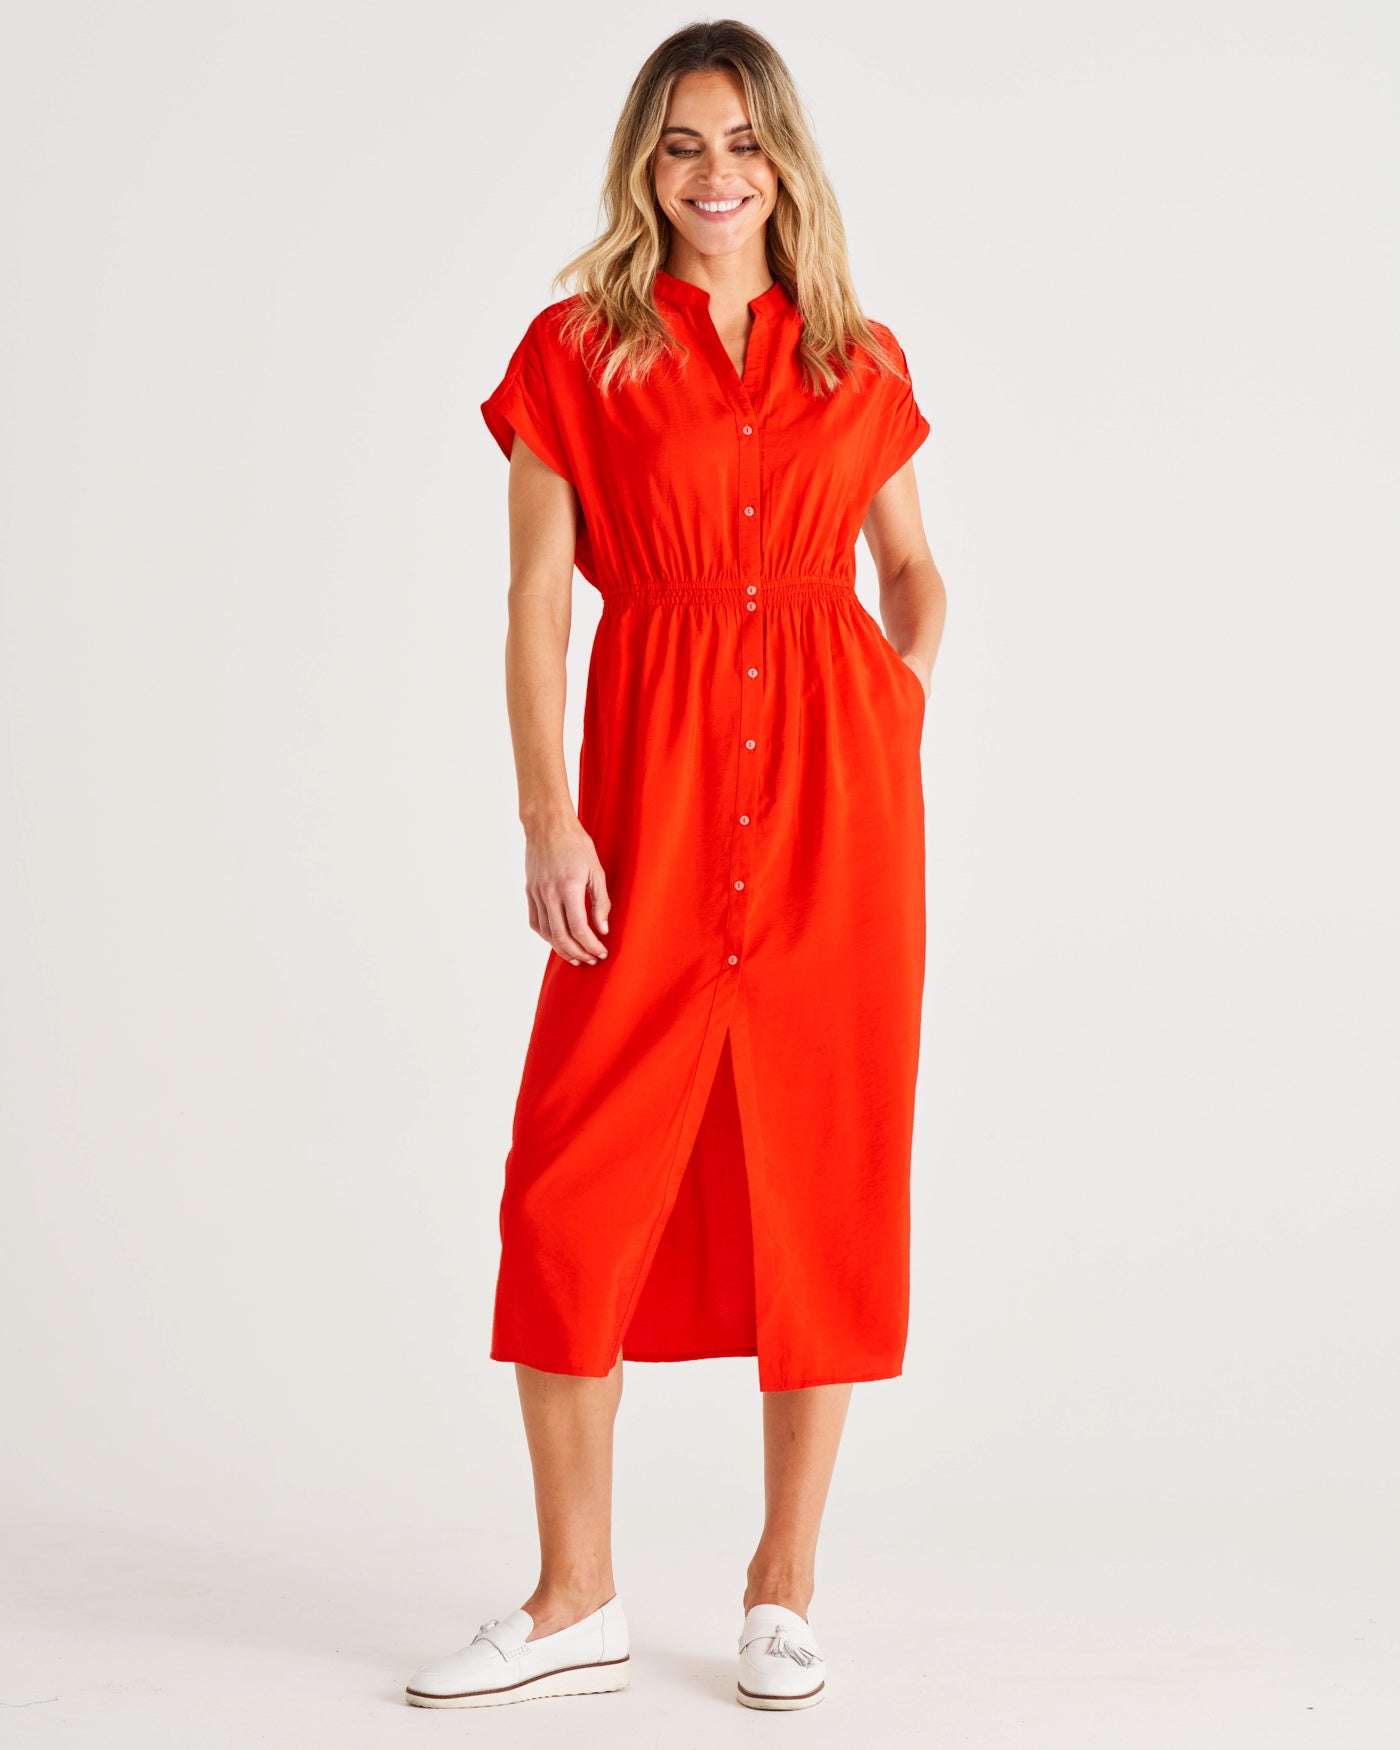 Simone V-Neckline Button Up Midi Dress - Cherry Tomato